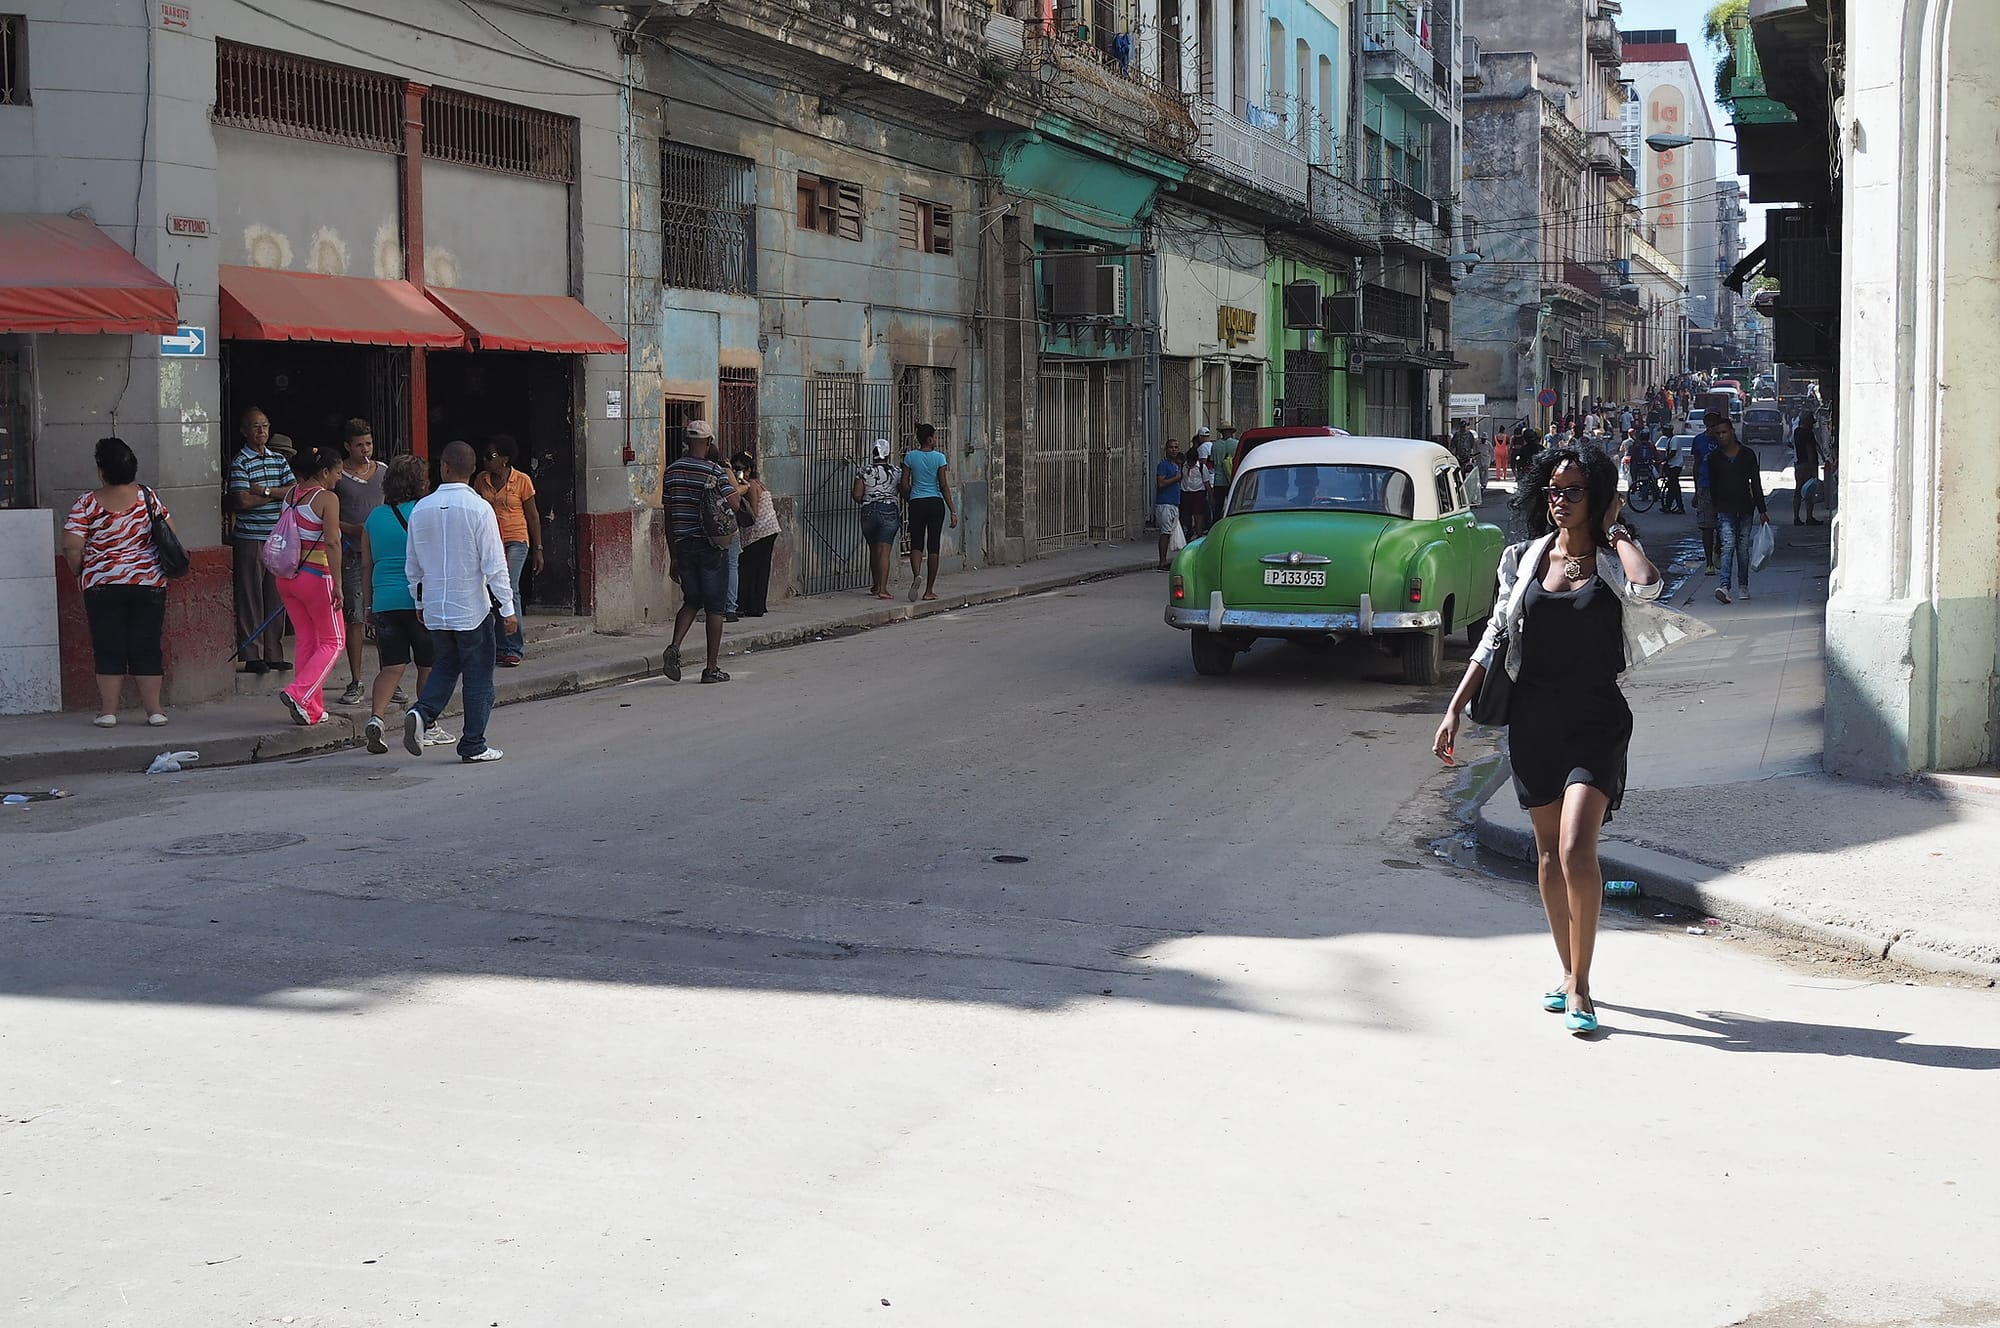 Needles and rum in Havana